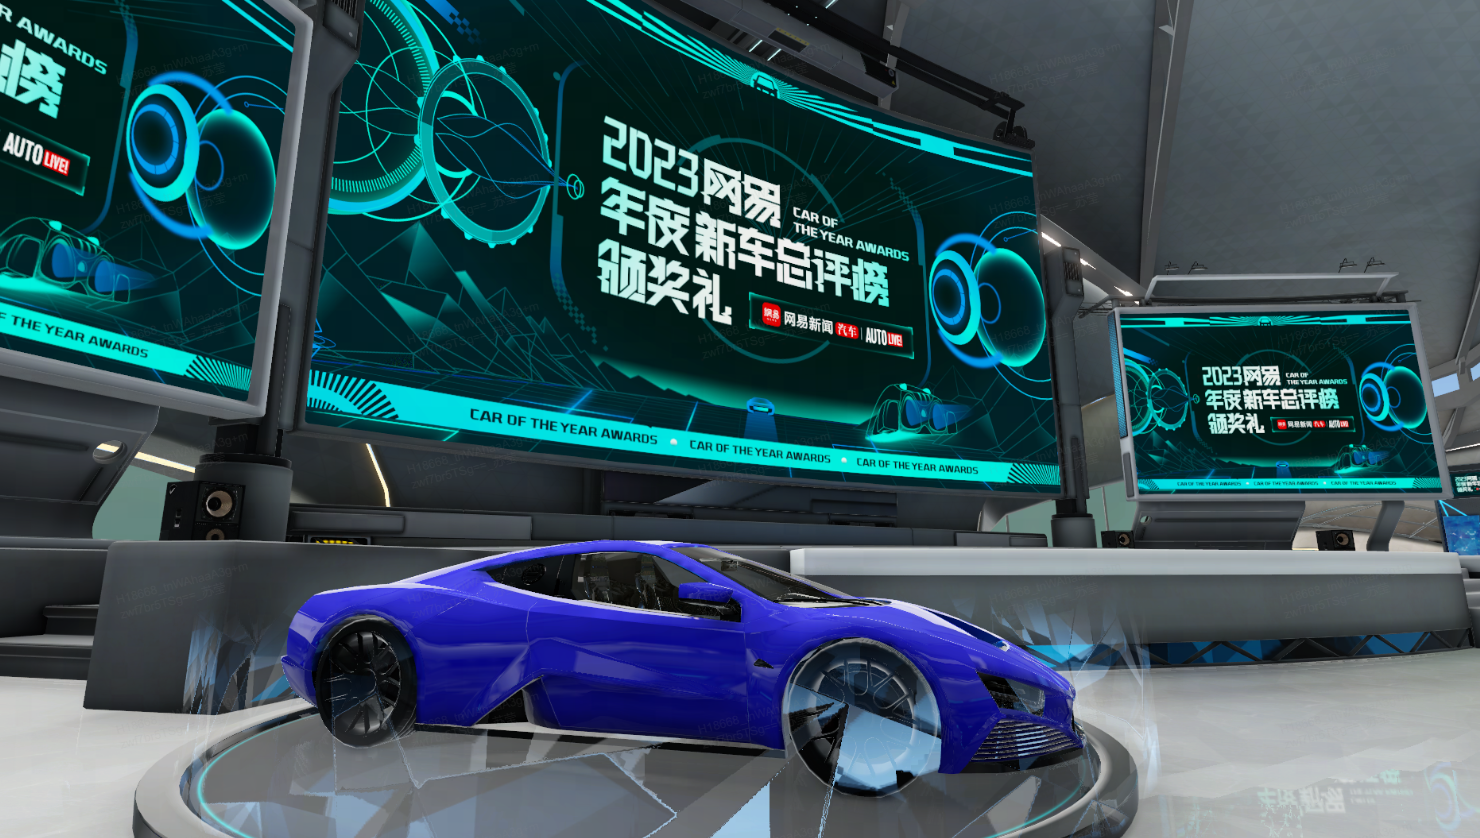 这是一张展示蓝色概念跑车的图片，背景有多个显示屏，上面有未来风格的图案和中文文字。